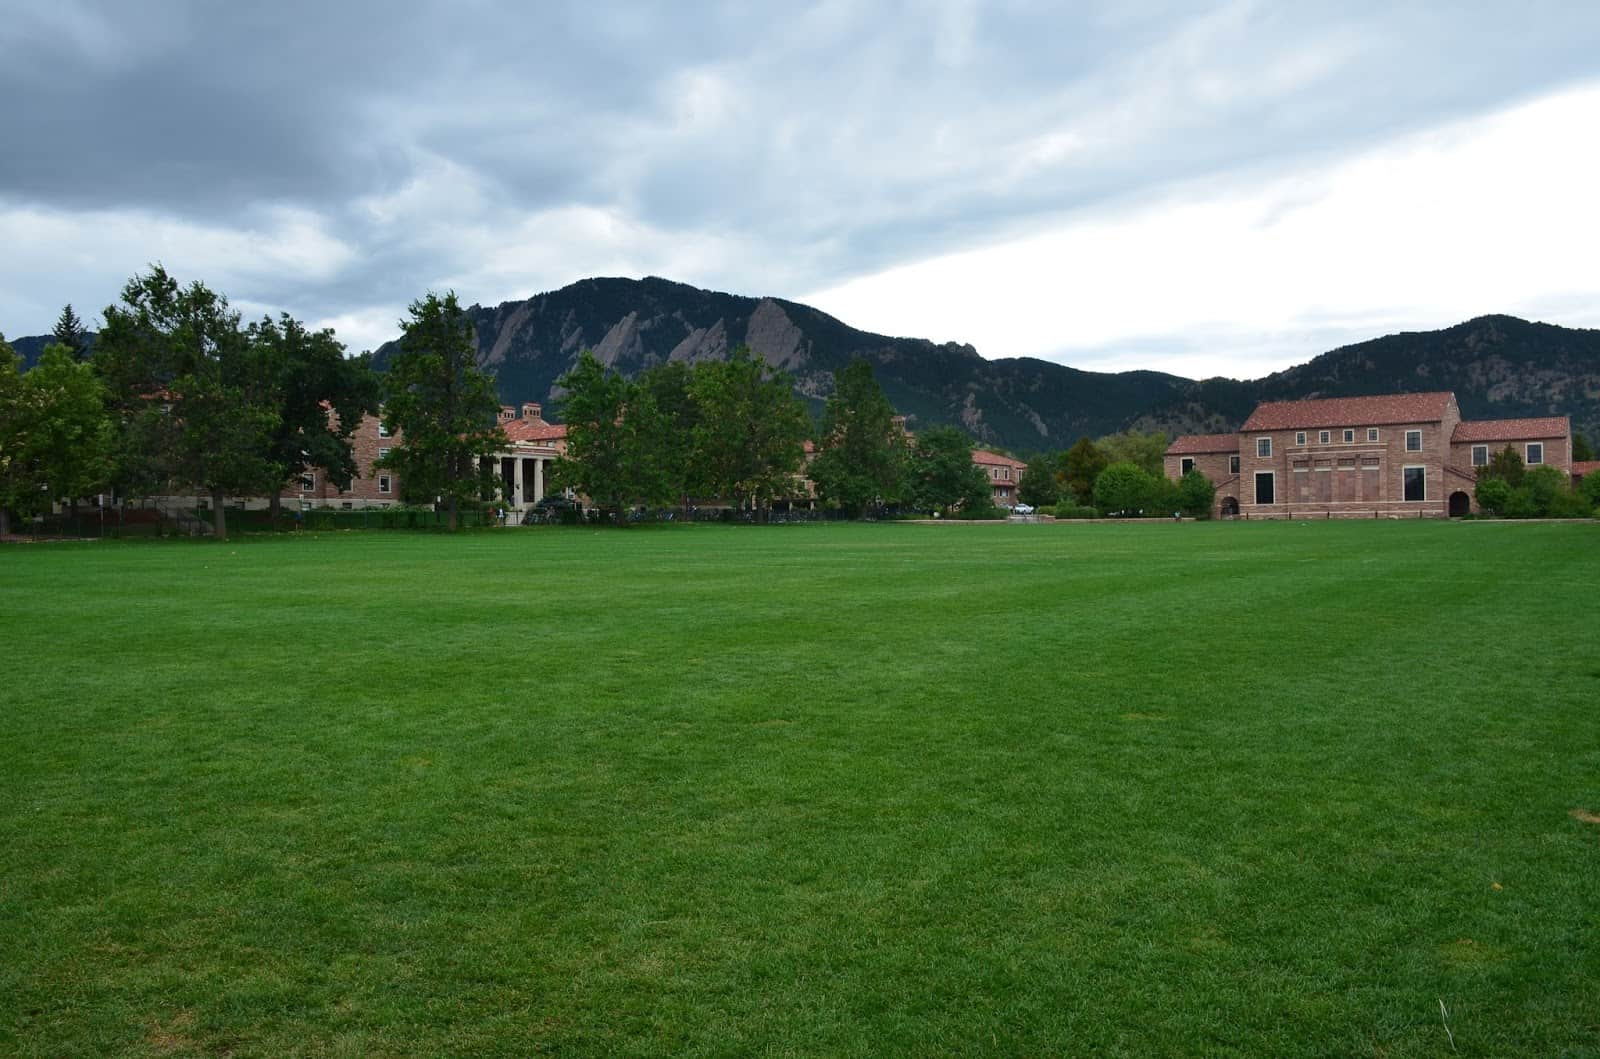 University of Colorado in Boulder, Colorado